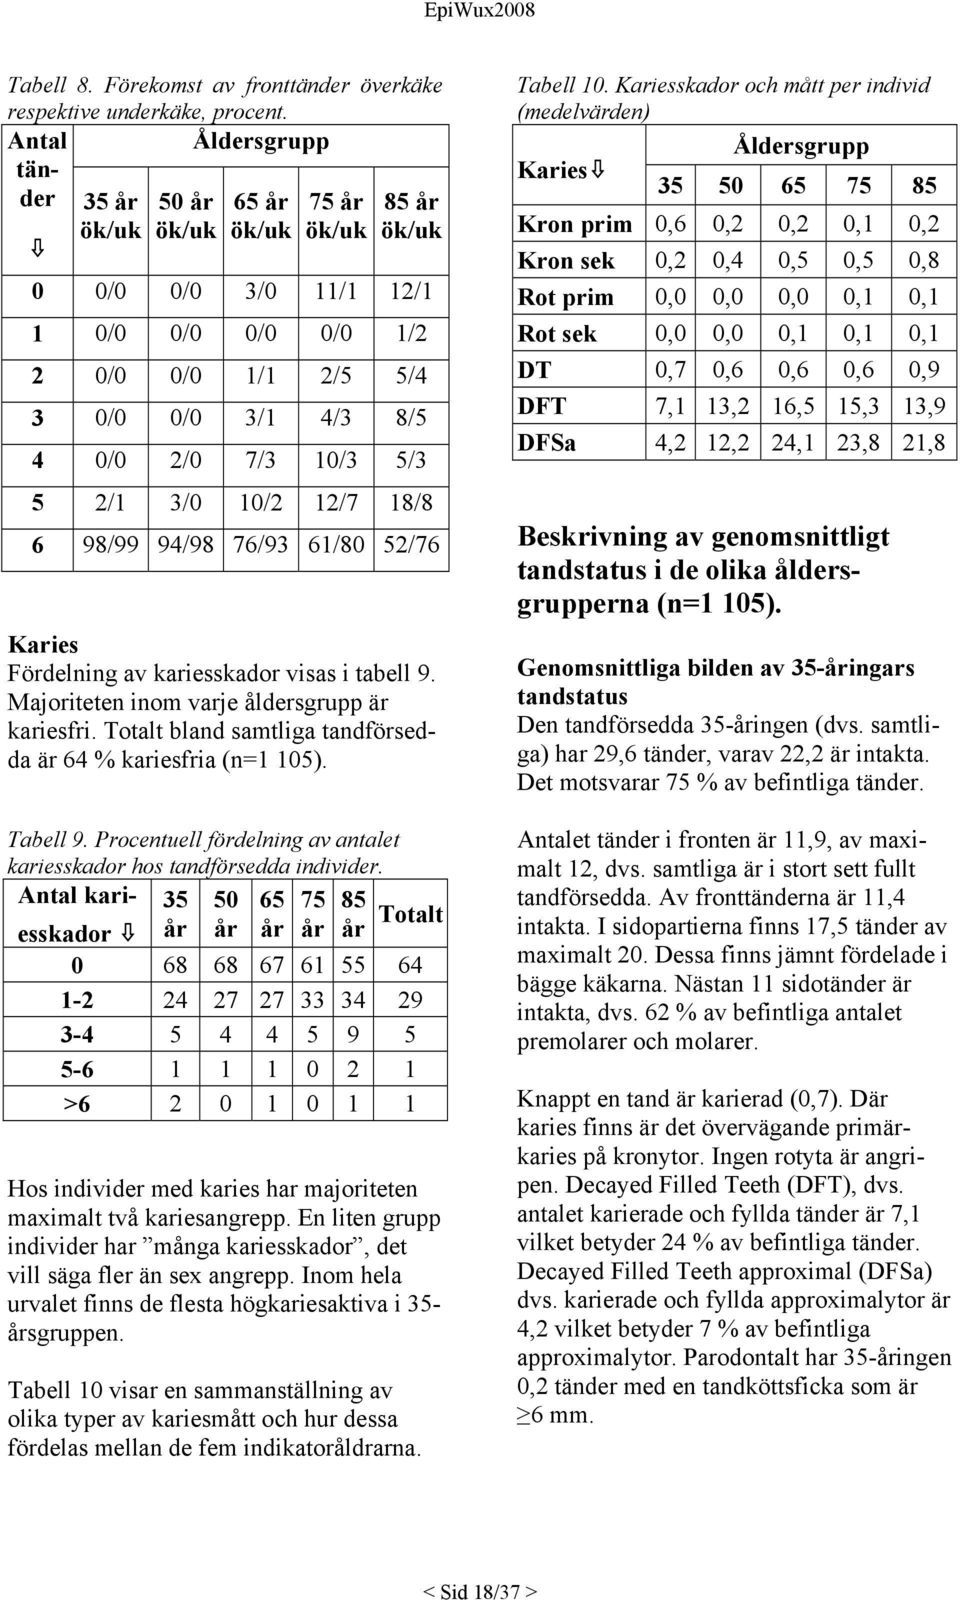 2/1 3/0 10/2 12/7 18/8 6 98/99 94/98 76/93 61/80 52/76 Karies Fördelning av kariesskador visas i tabell 9. Majoriteten inom varje åldersgrupp är kariesfri.